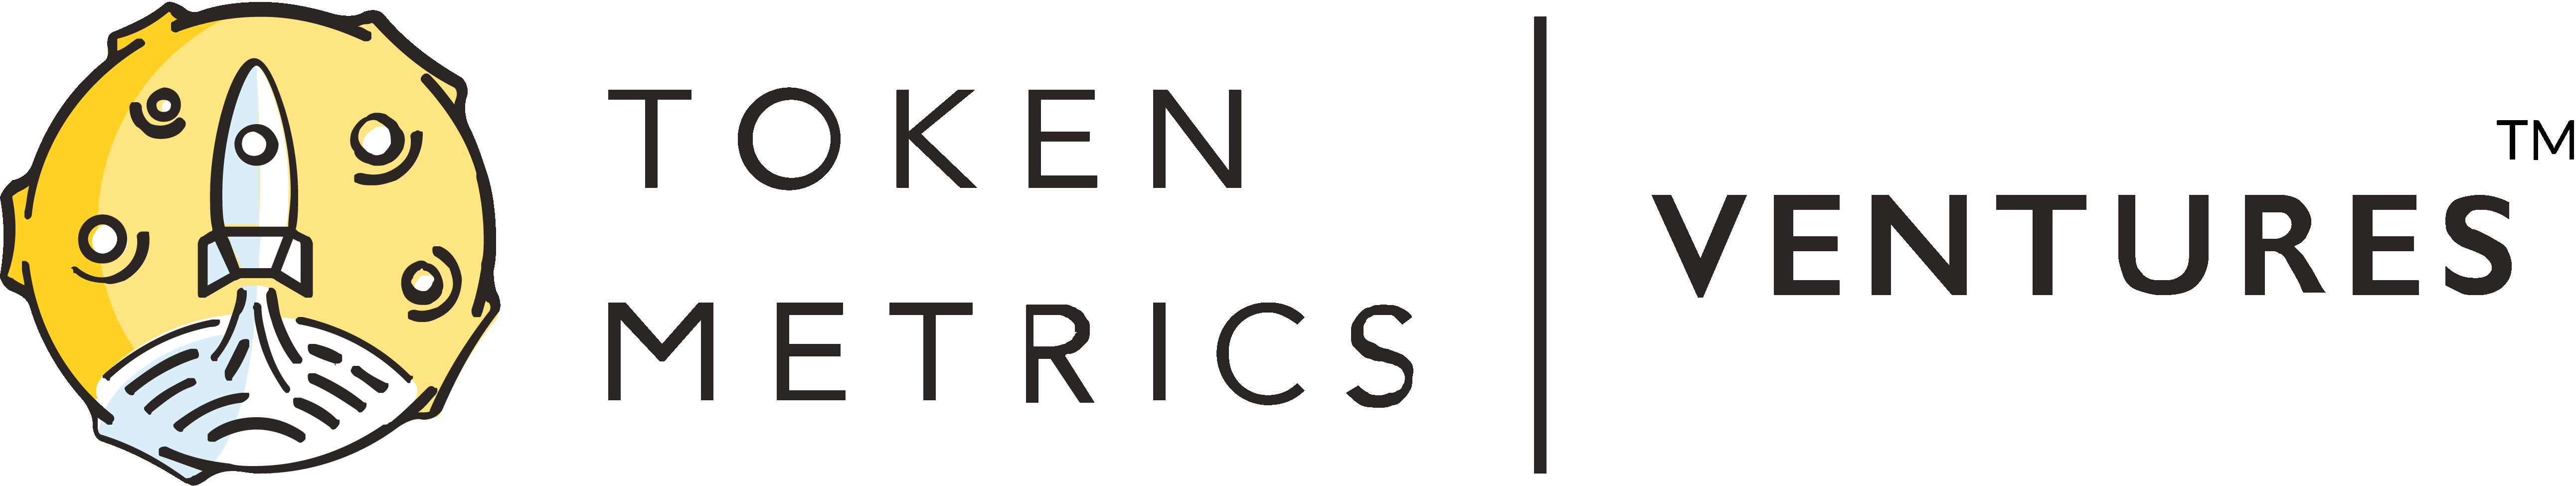 Token Metrics Ventures